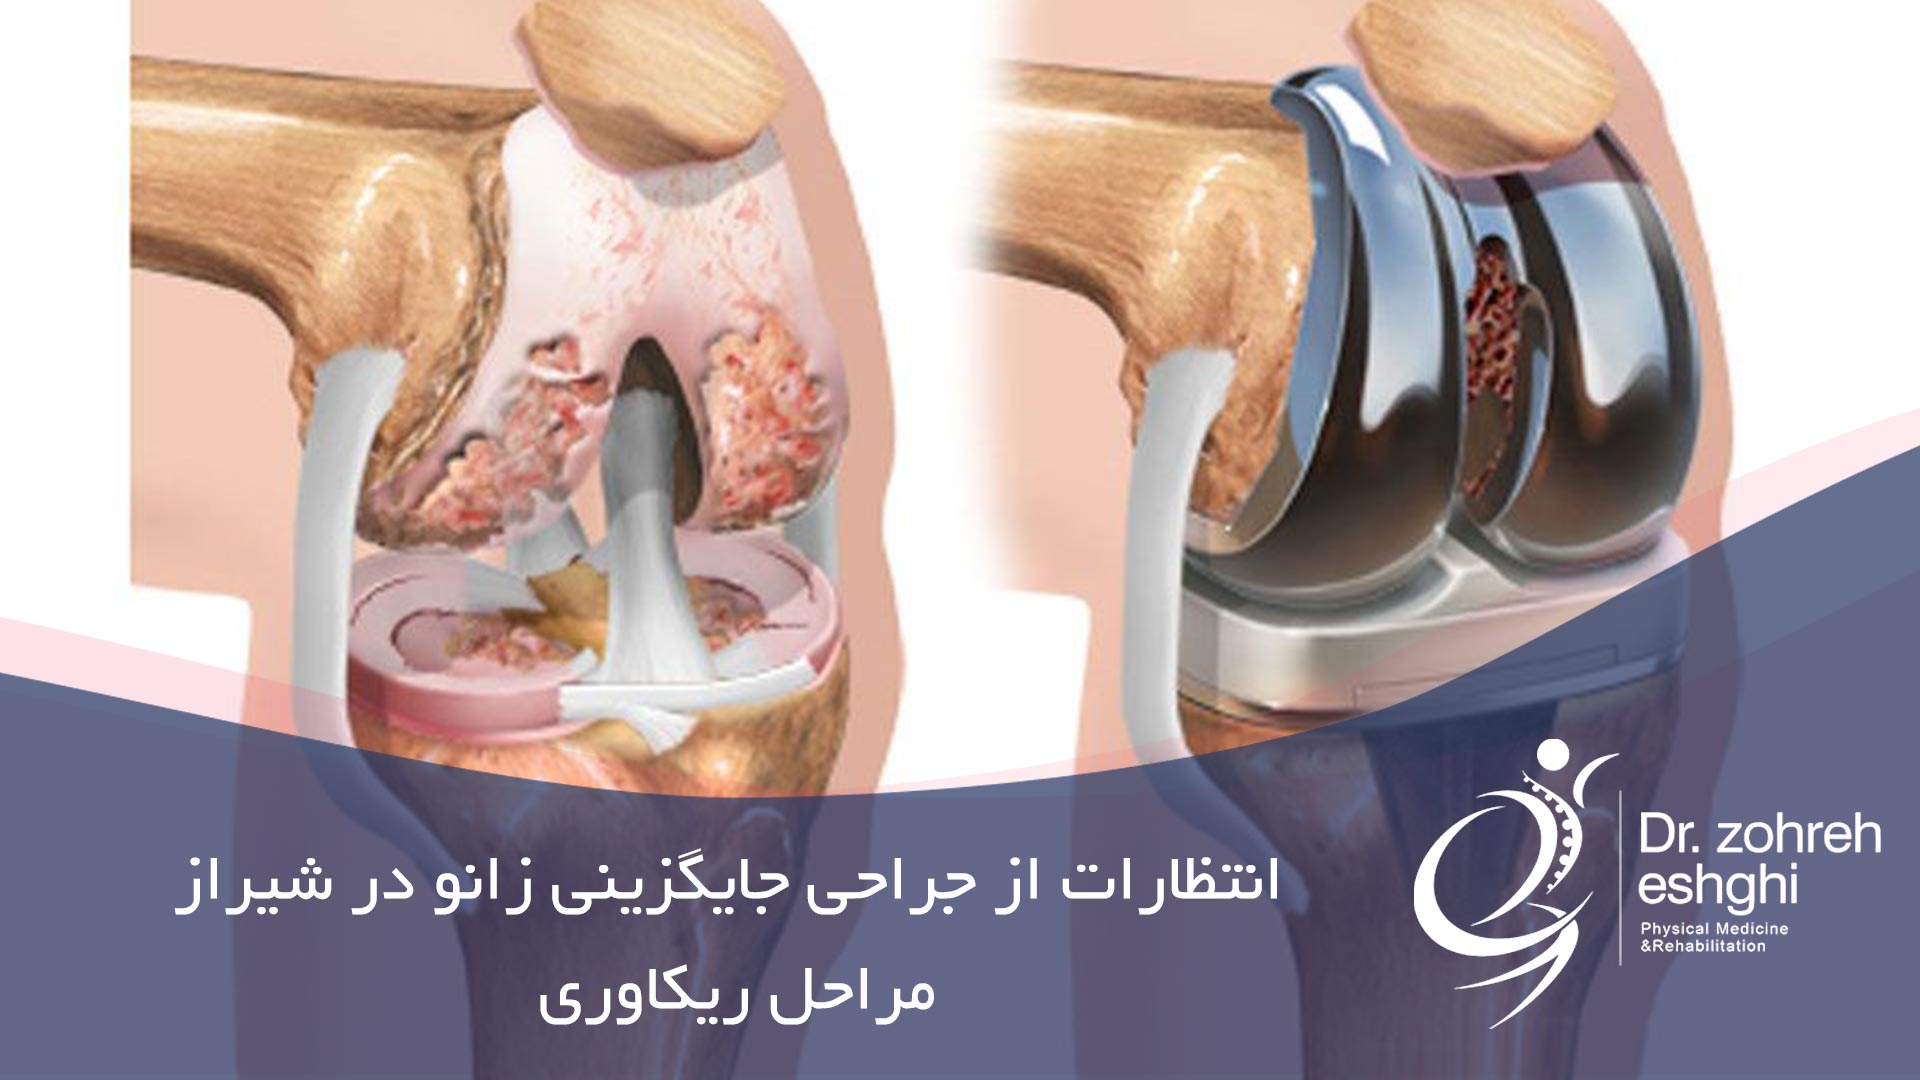 انتظارات از جراحی جایگزینی زانو در شیراز و مراحل ریکاوری